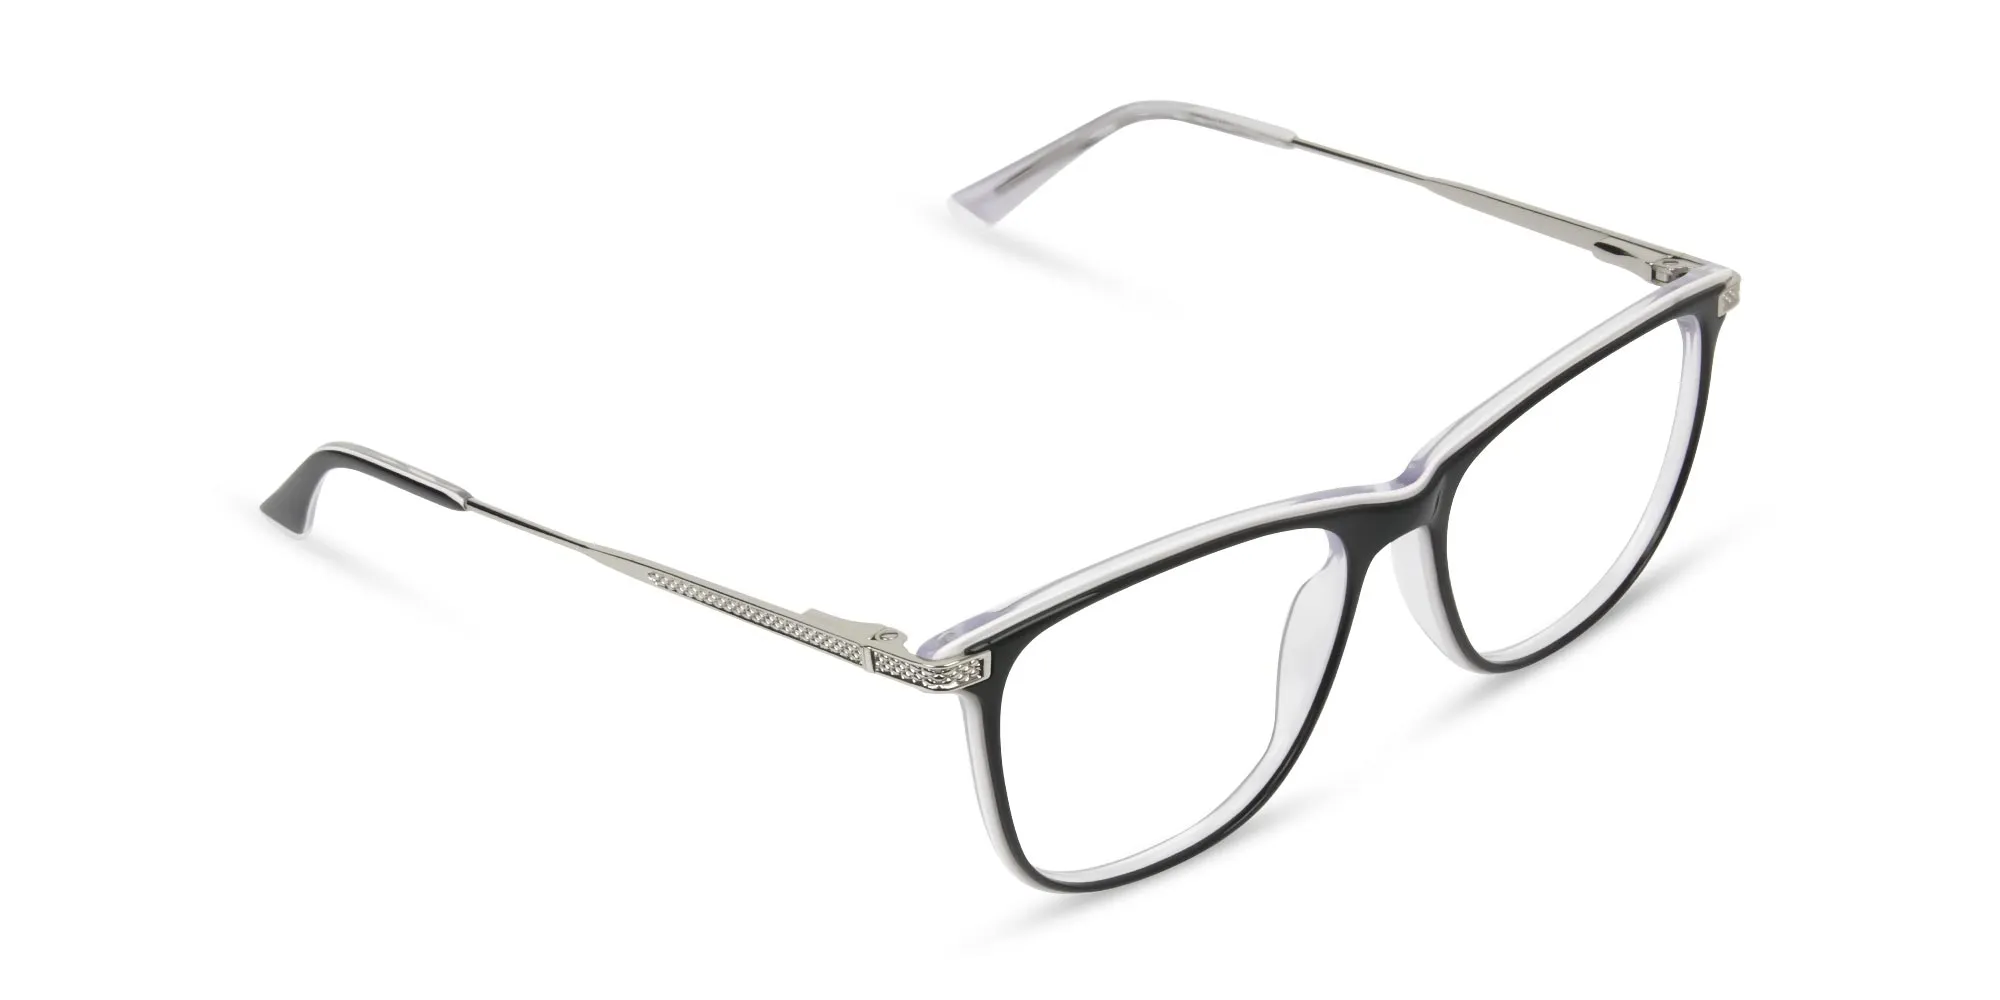 Black-and-White-Rectangular-Glasses-2